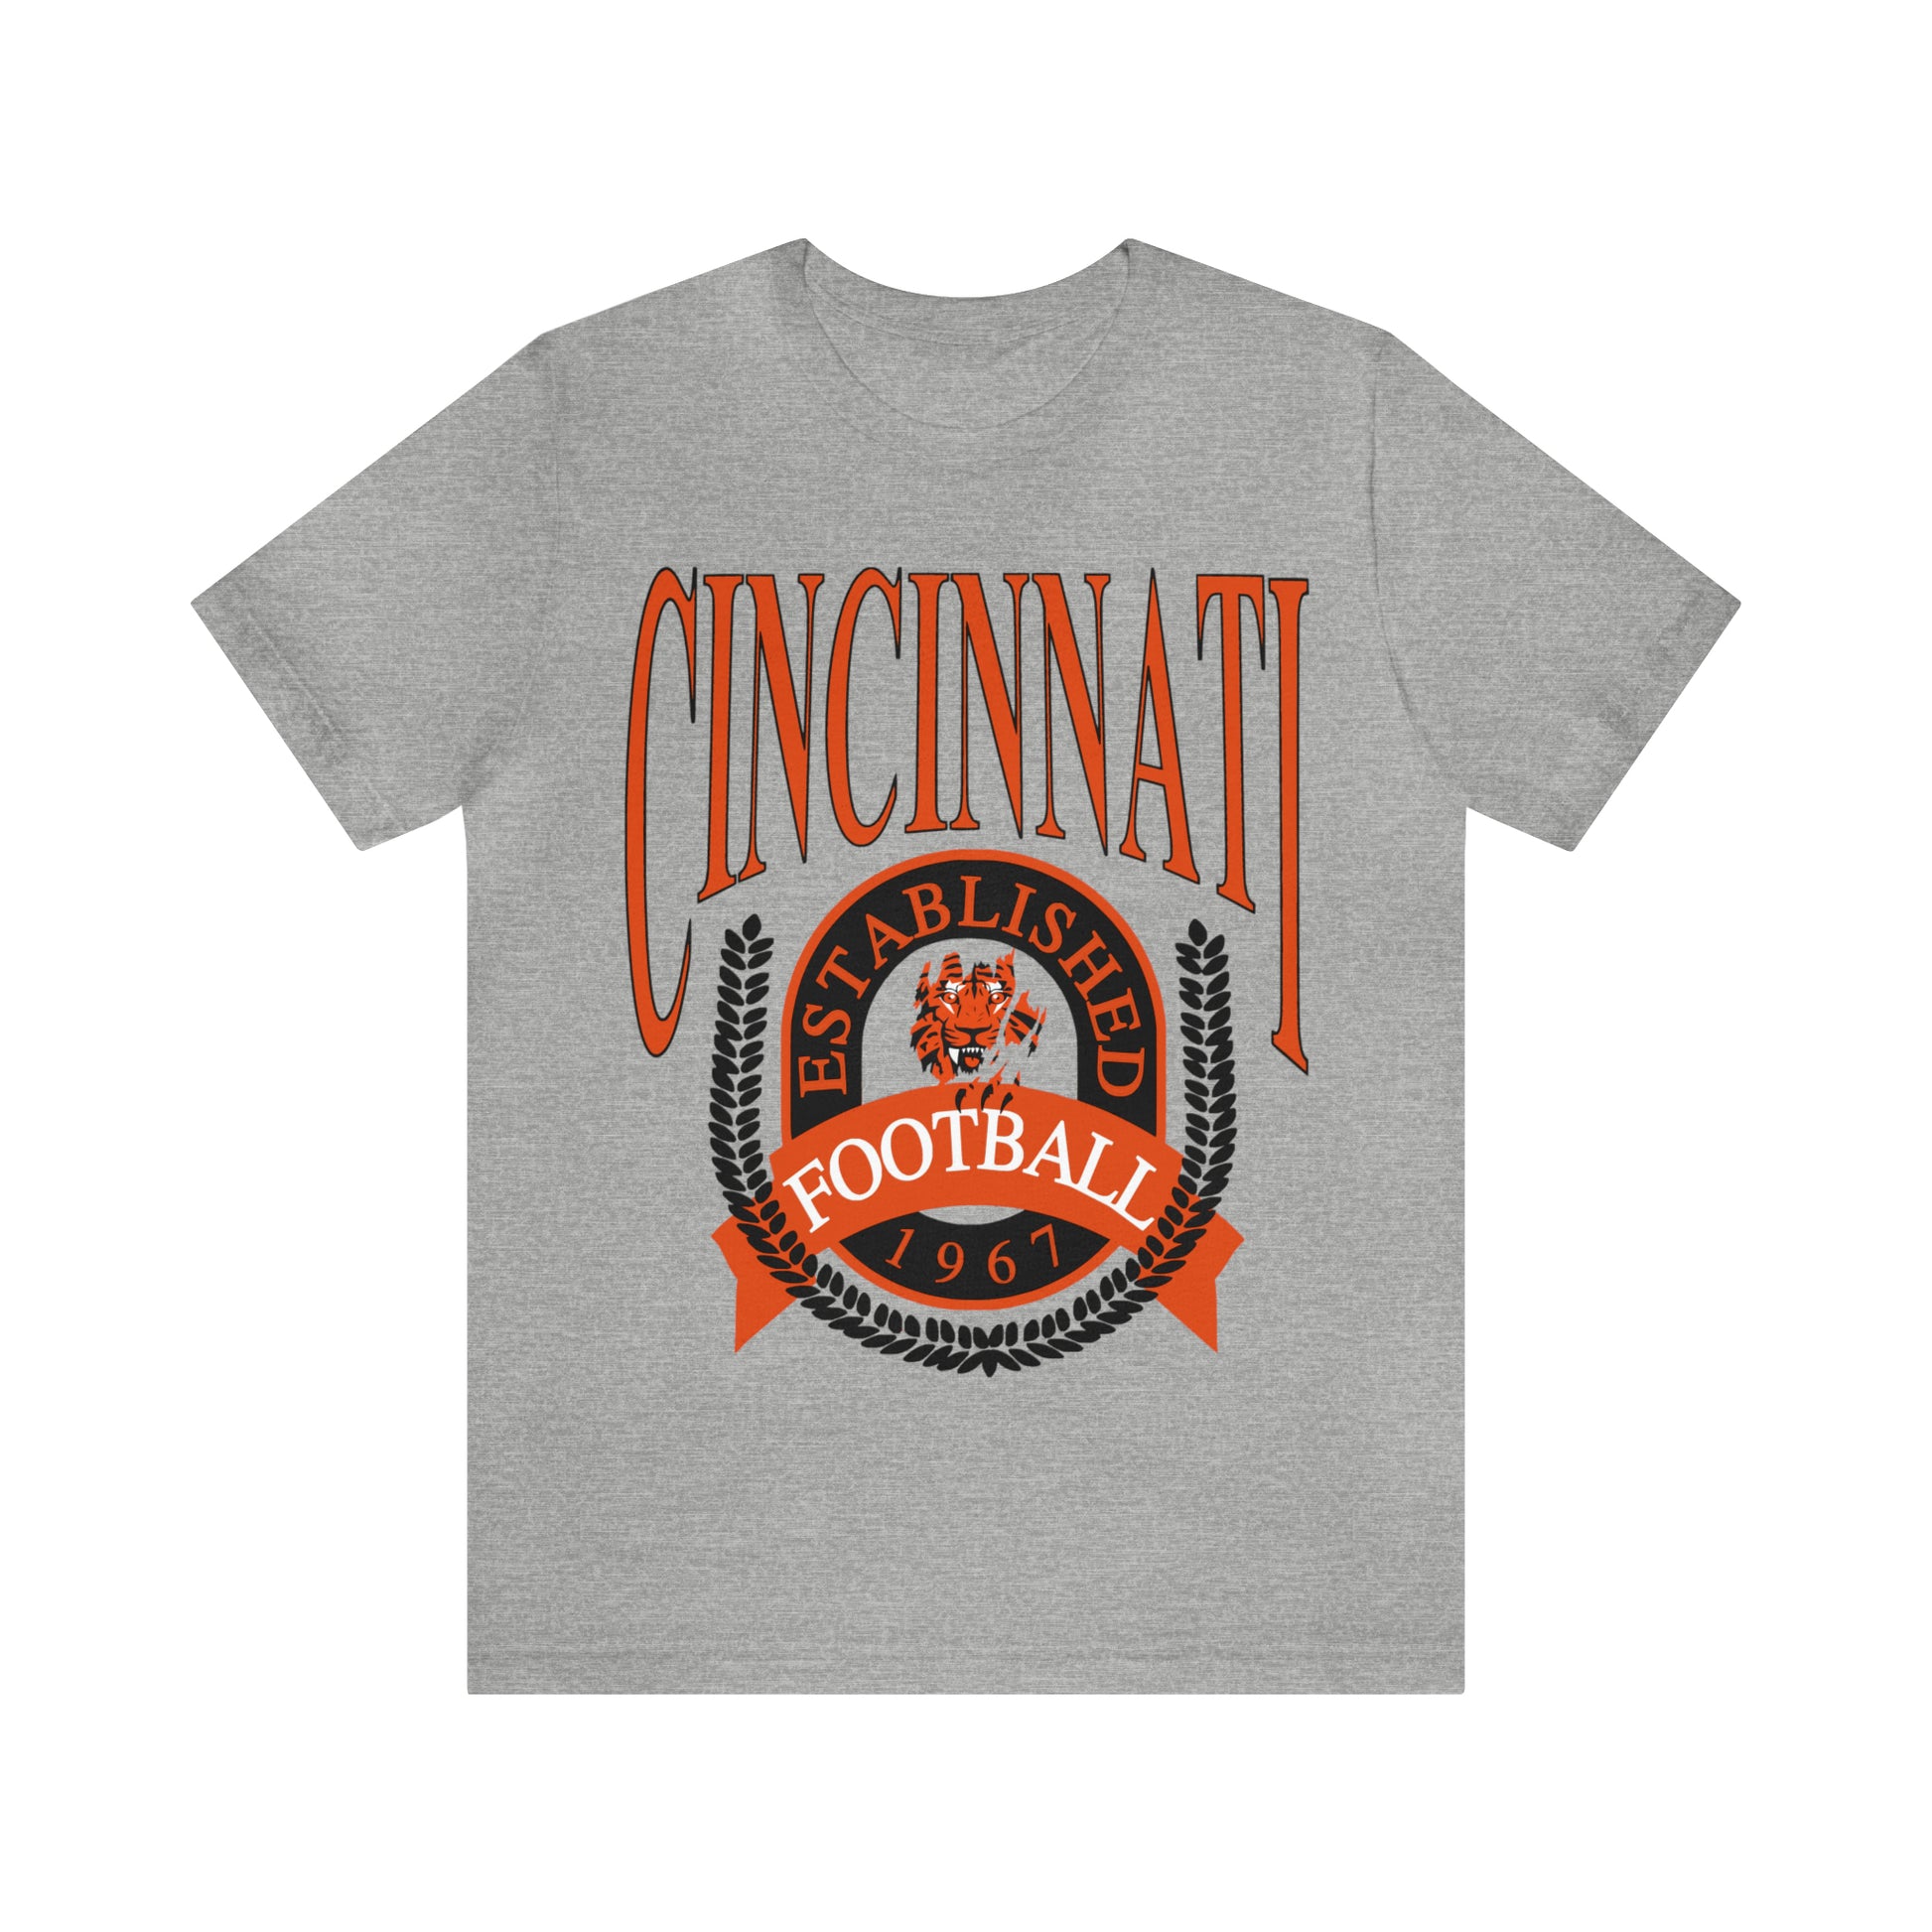 Cincinnati Bengals T-Shirt - Vintage Short Sleeve Bengals Tee - NFL Football Oversized Unisex, Men's & Women's Apparel - Design 1